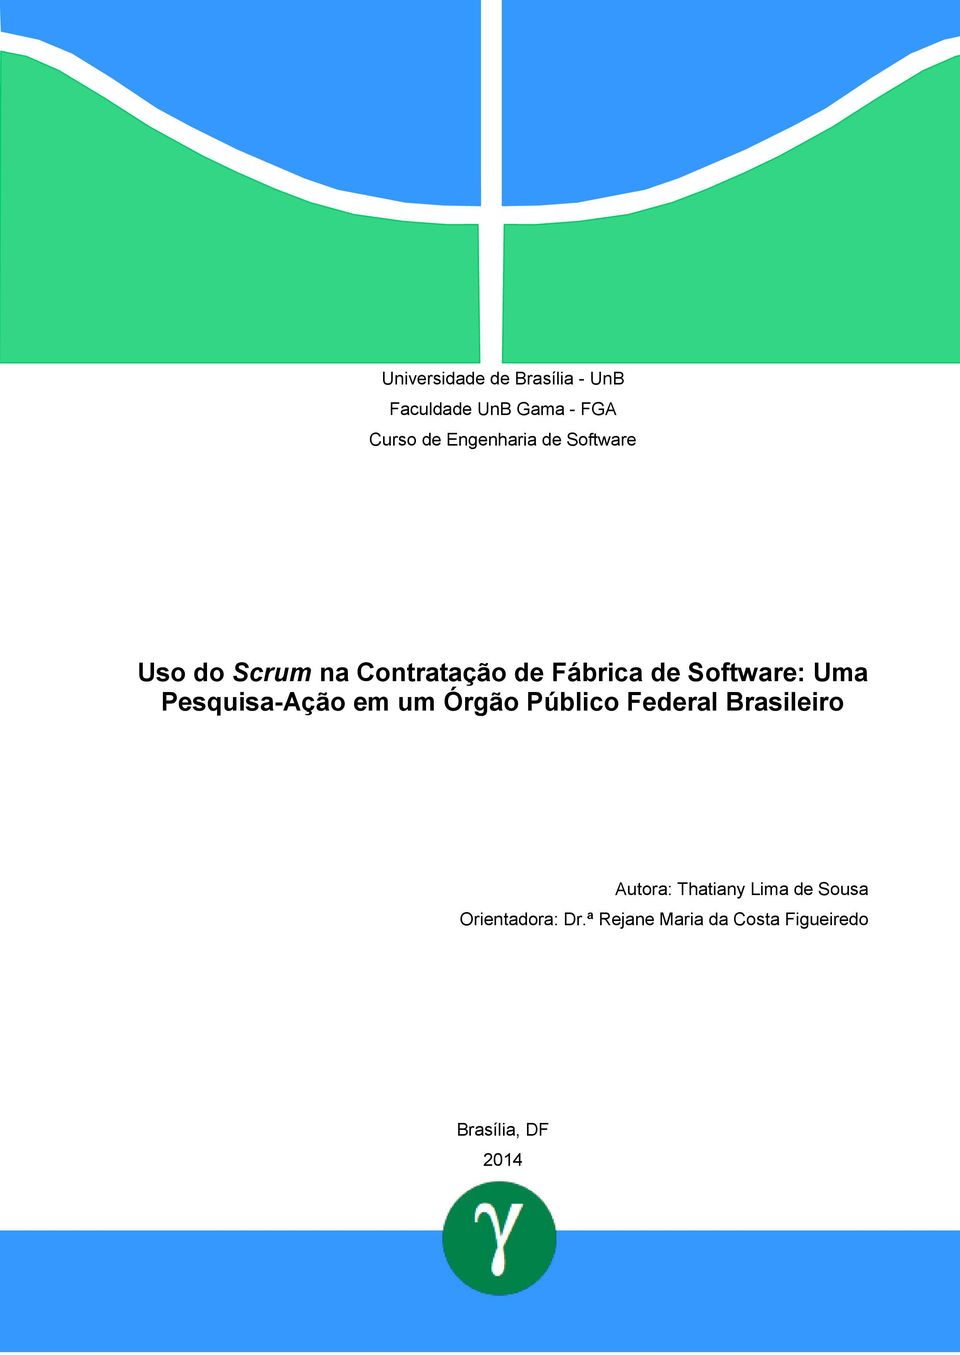 Software: Uma Pesquisa-Ação em um Órgão Público Federal Brasileiro